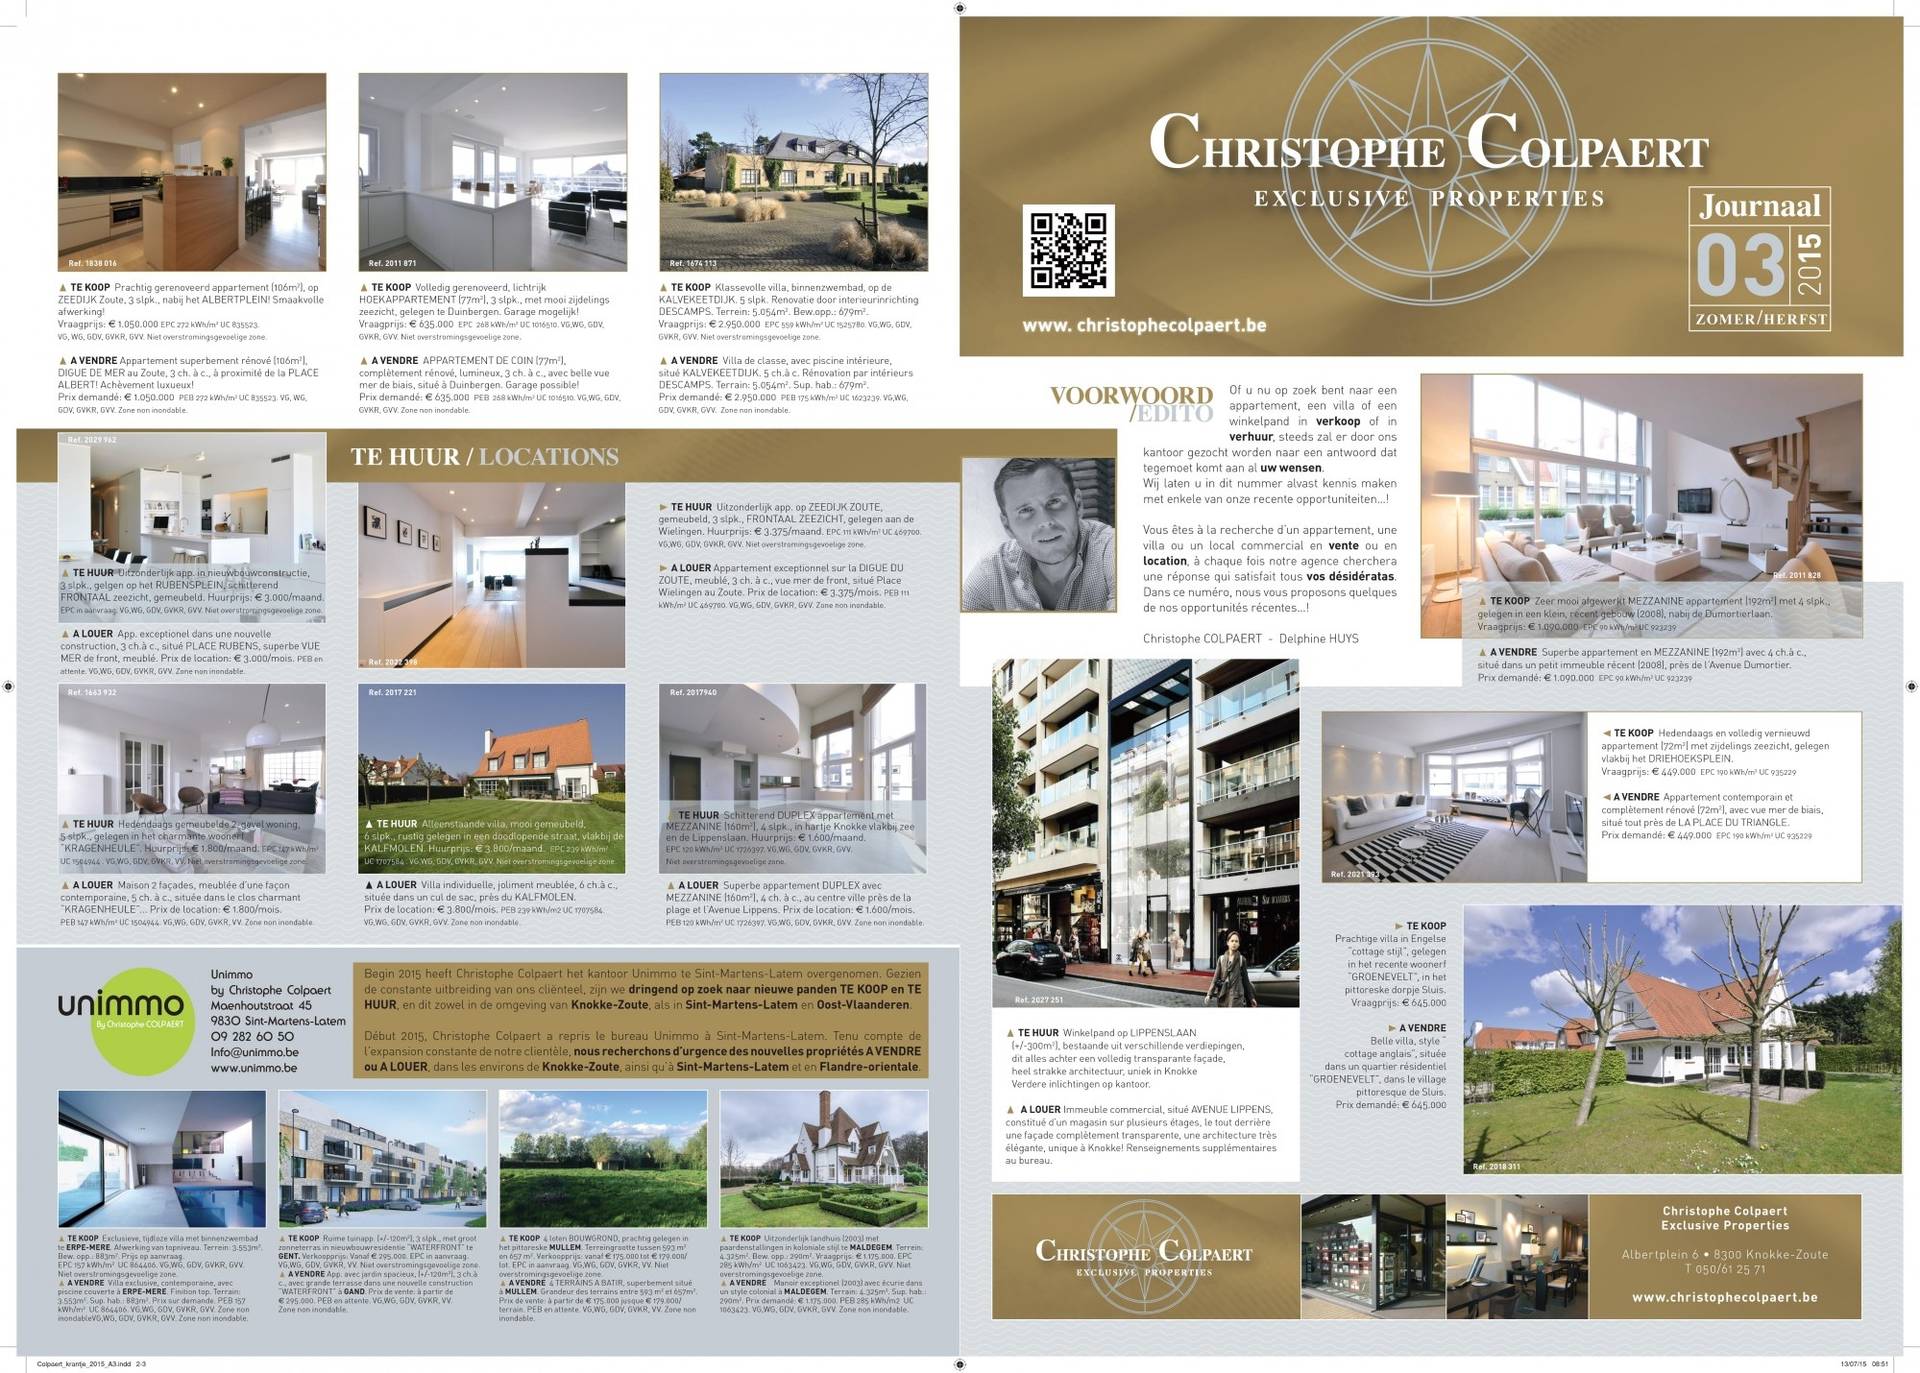 Christophe COLPAERT Exclusive Properties - JOURNAAL ZOMER 2015